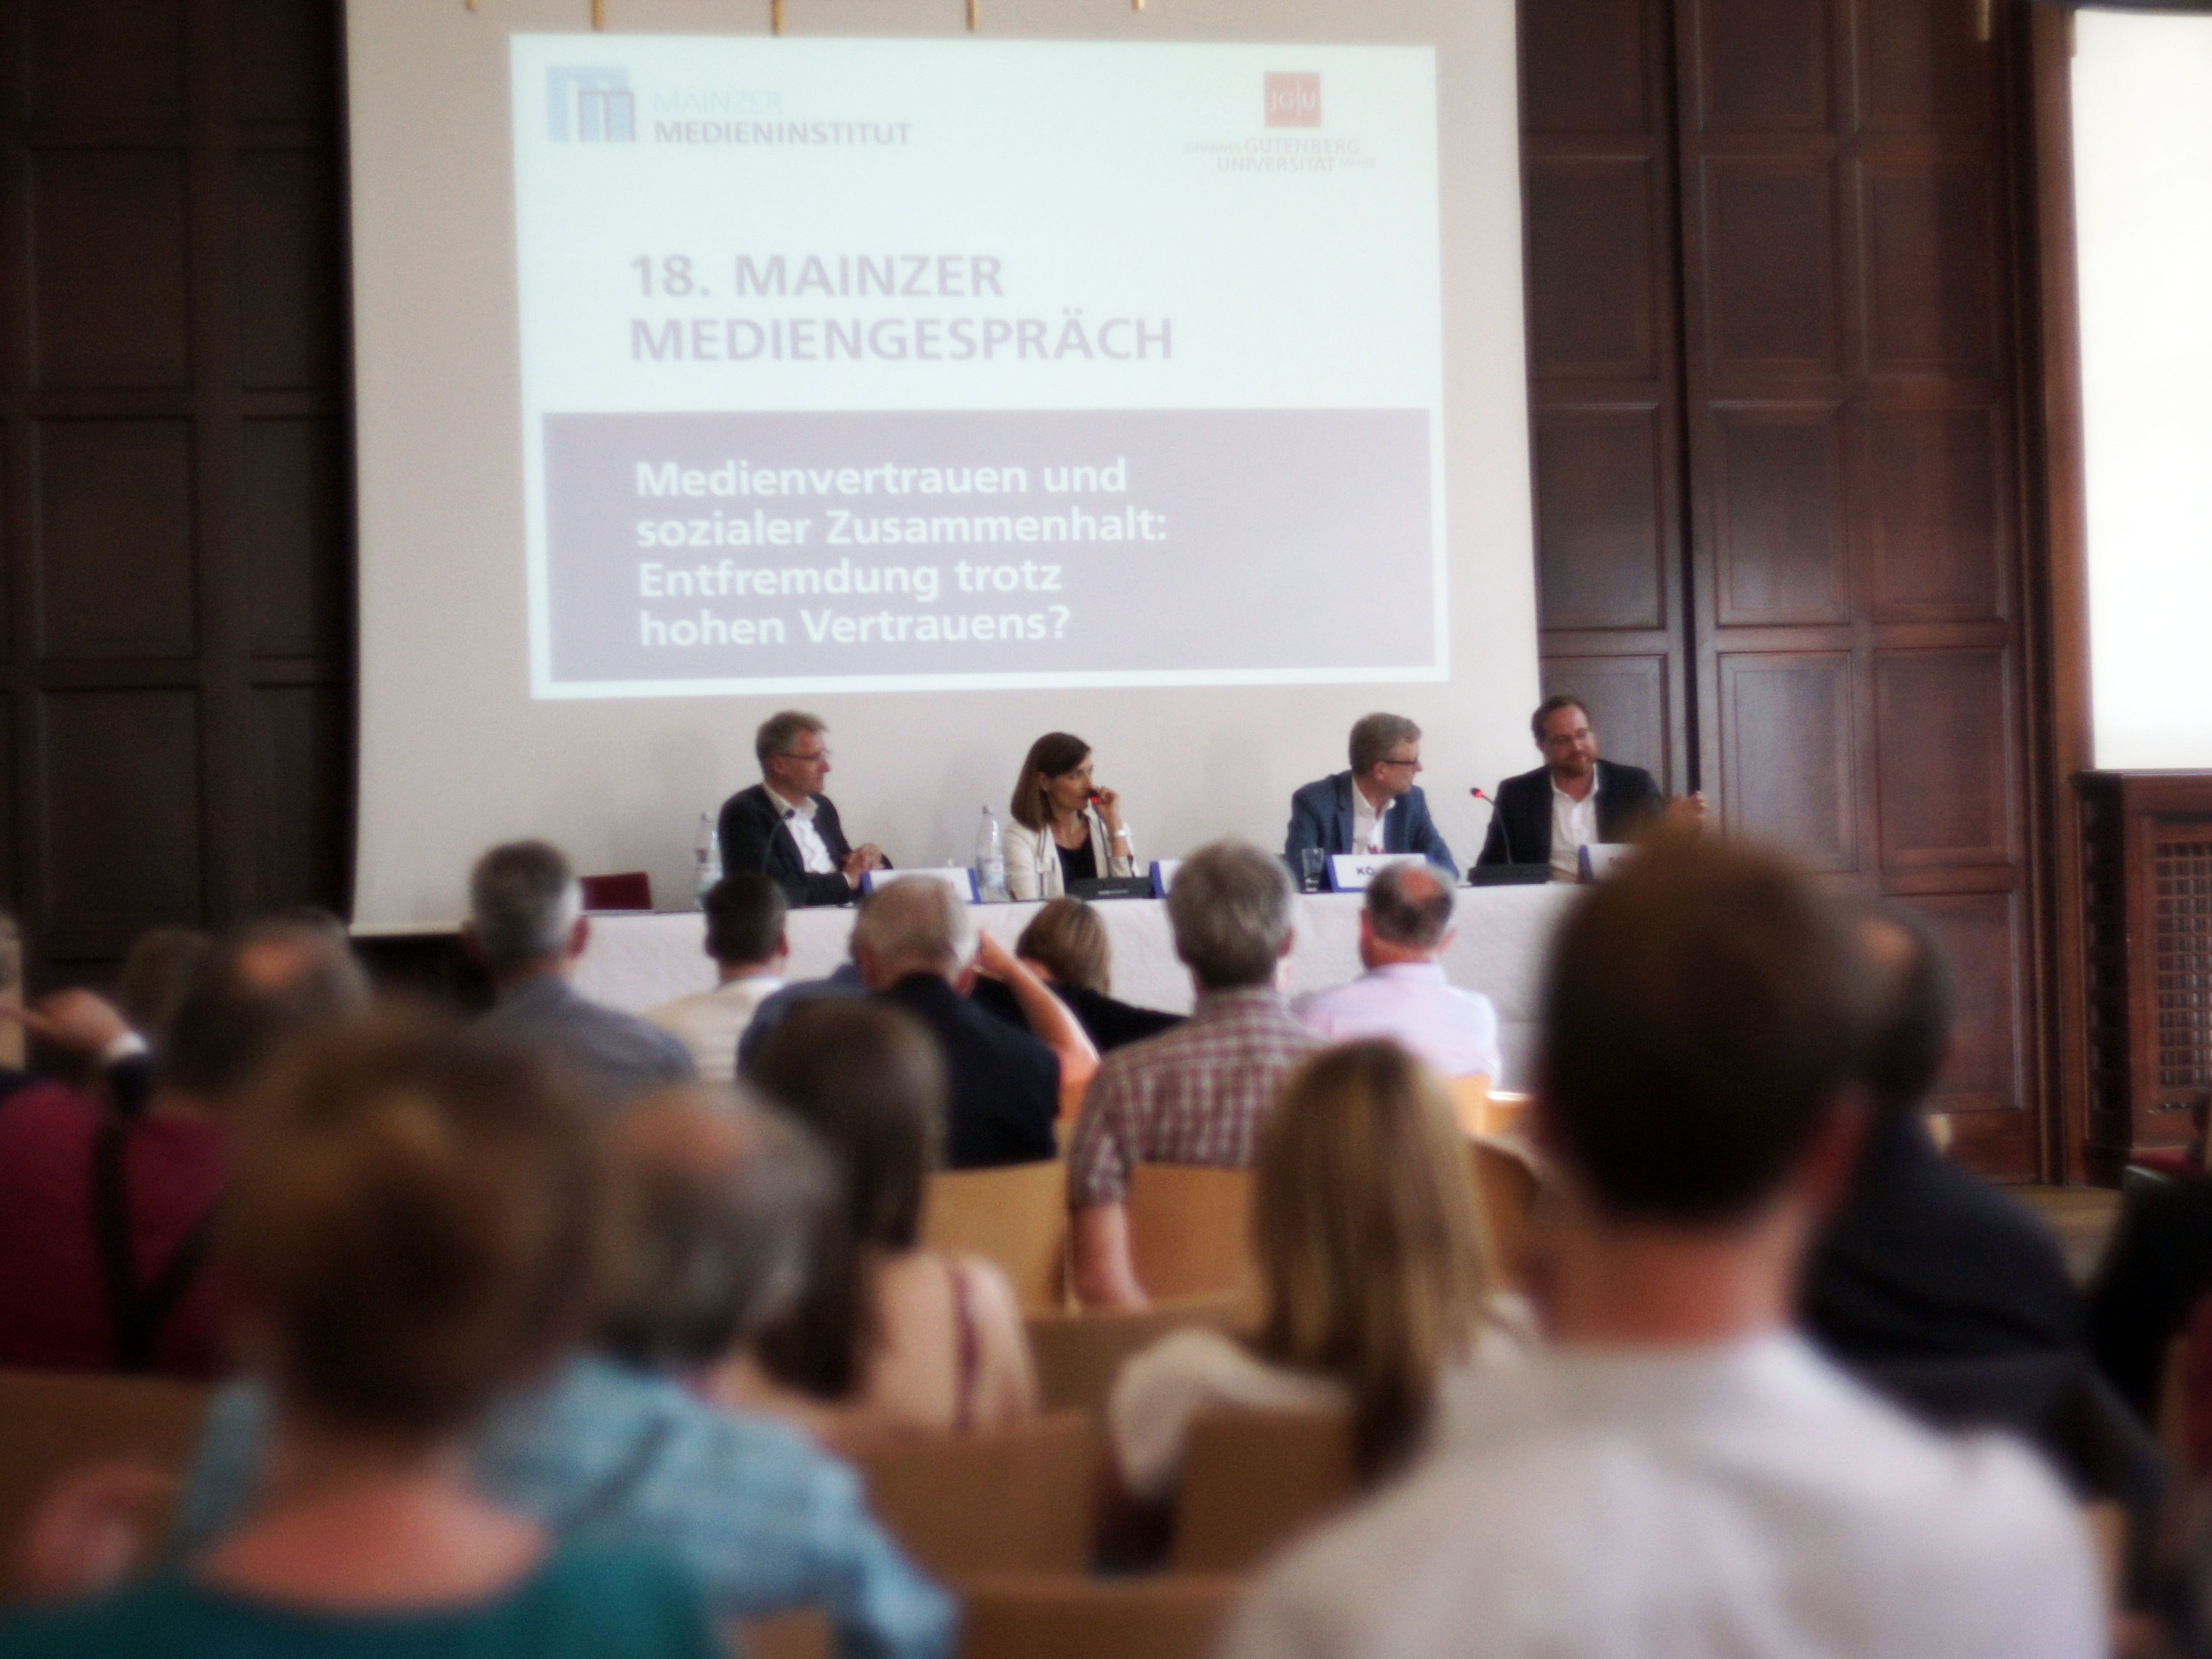 18. Mainzer Mediengespräch: Entfremdung trotz hohen Vertrauens? Eine Diskussion aus journalistischer Sicht